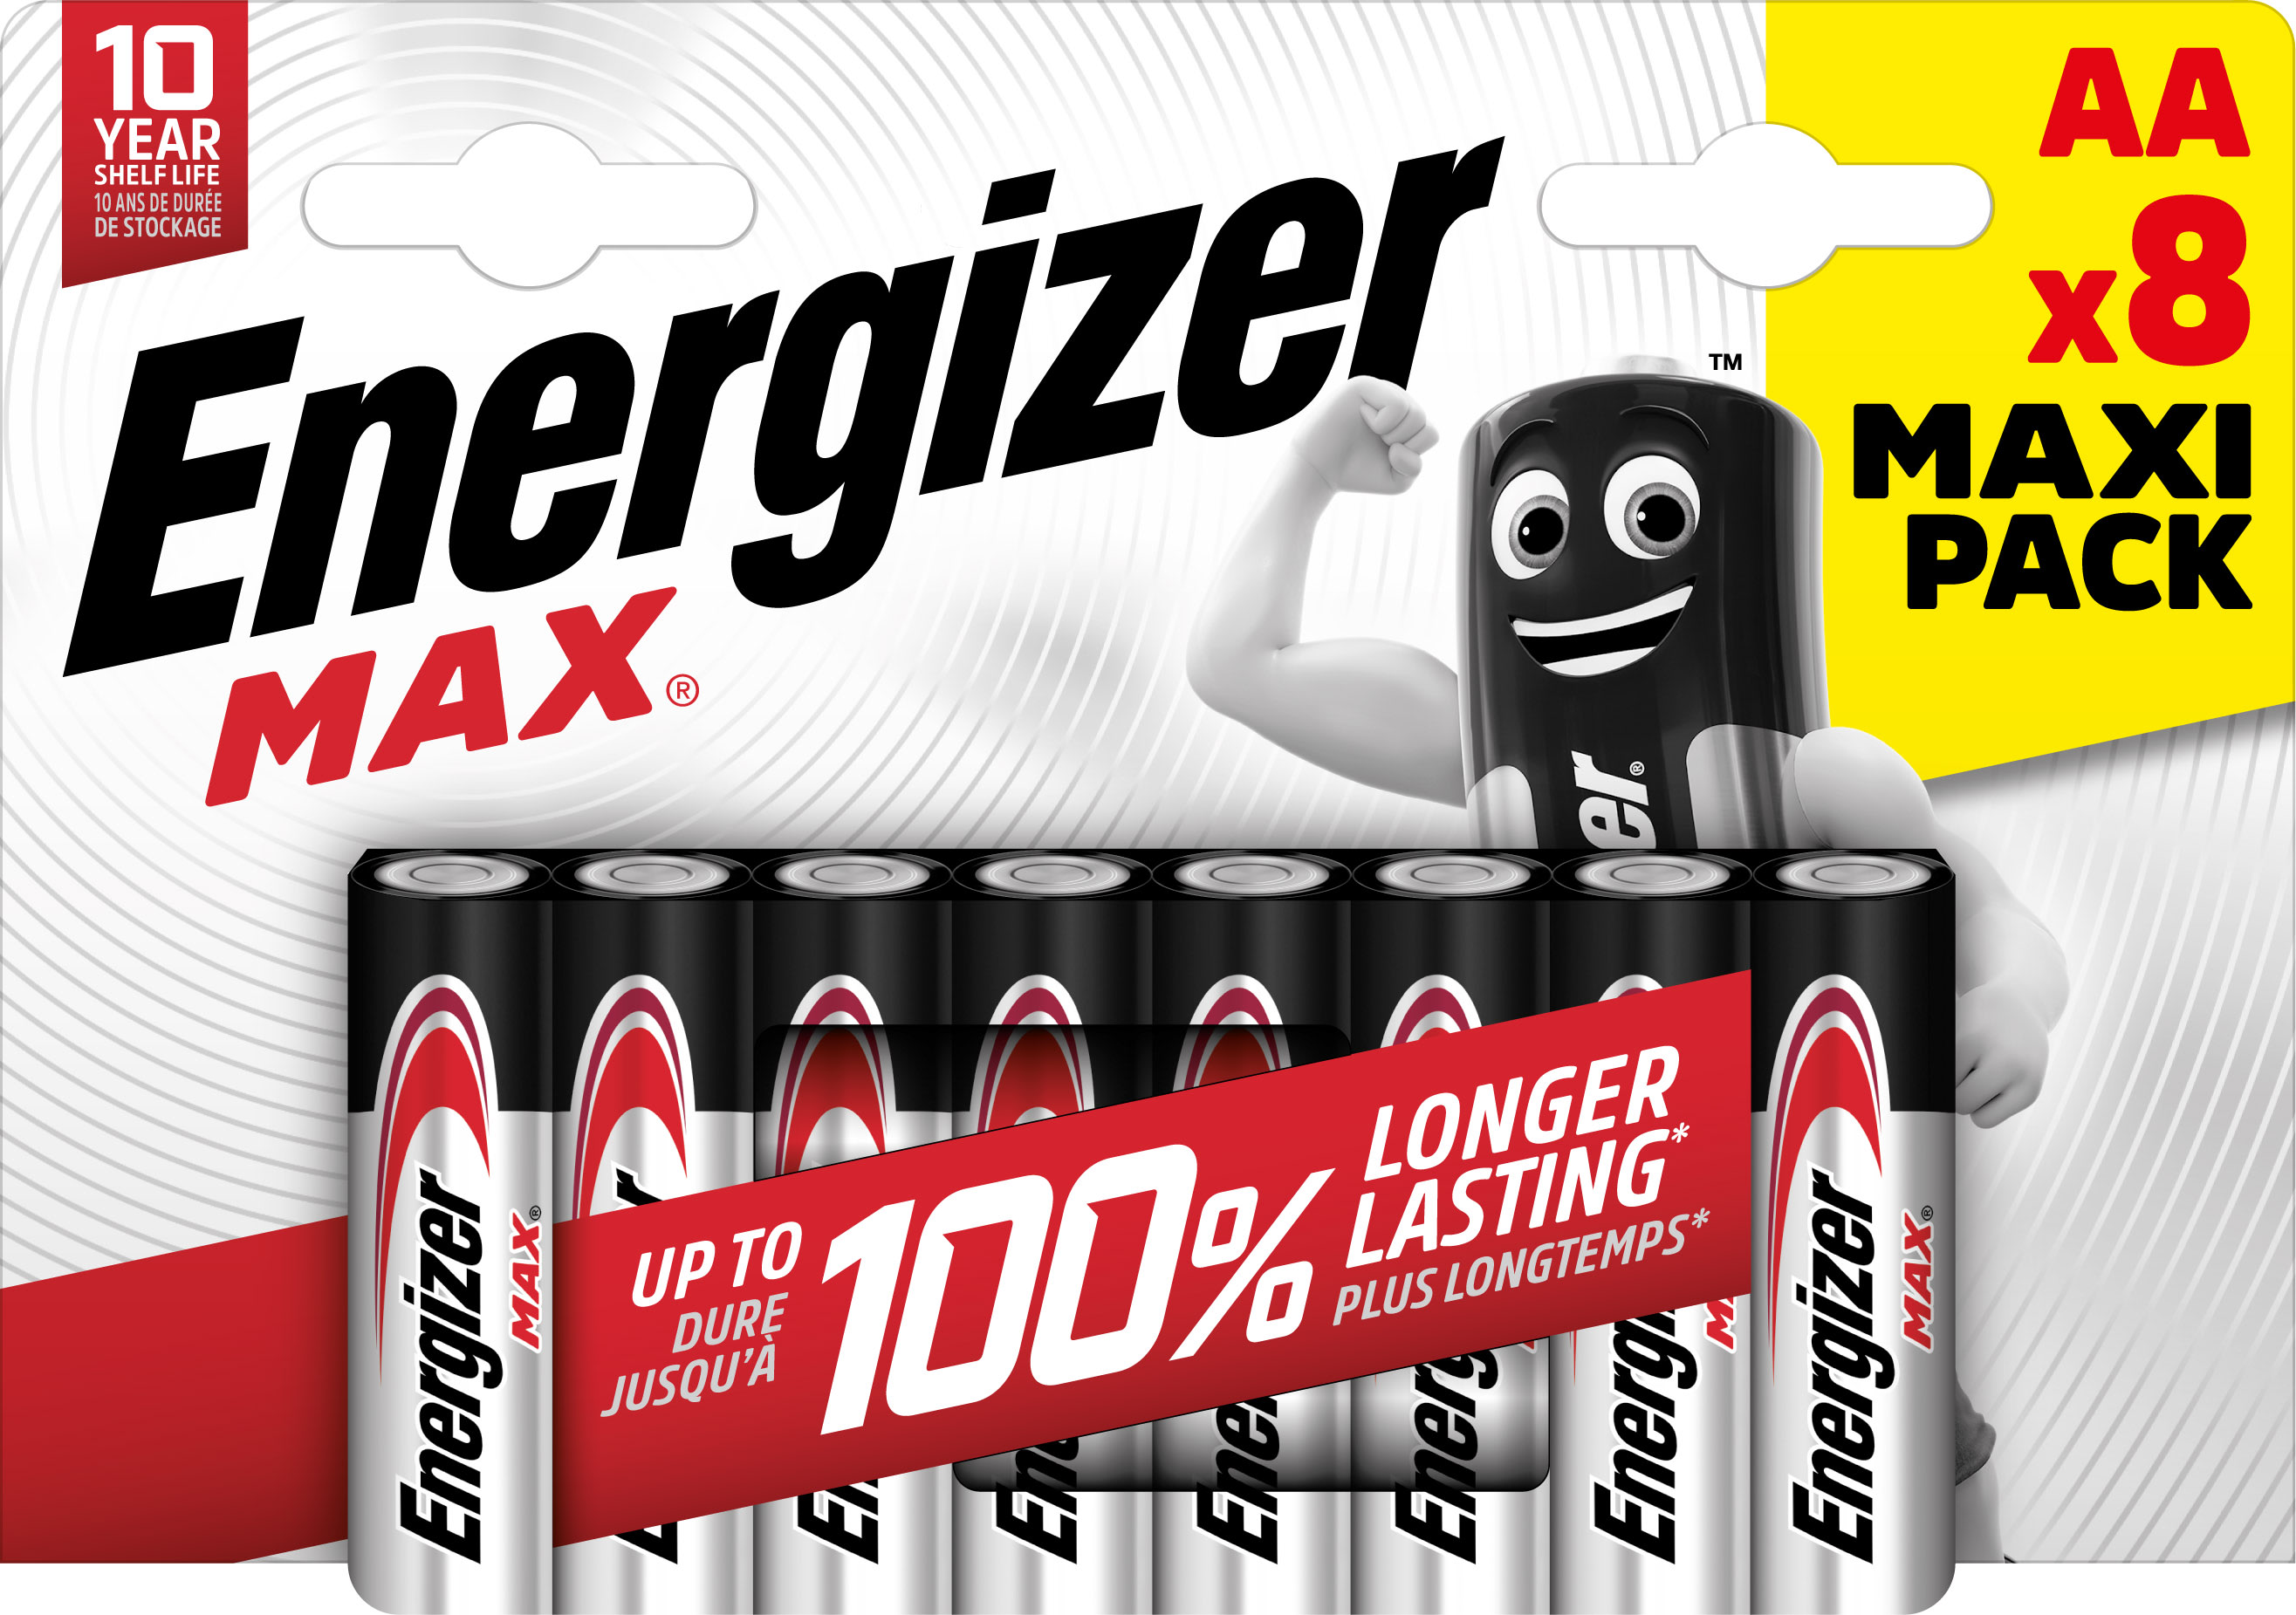 Energizer - Pile Max AA x 8 sans risque pour vos appareils avec la garantie 0 coulure